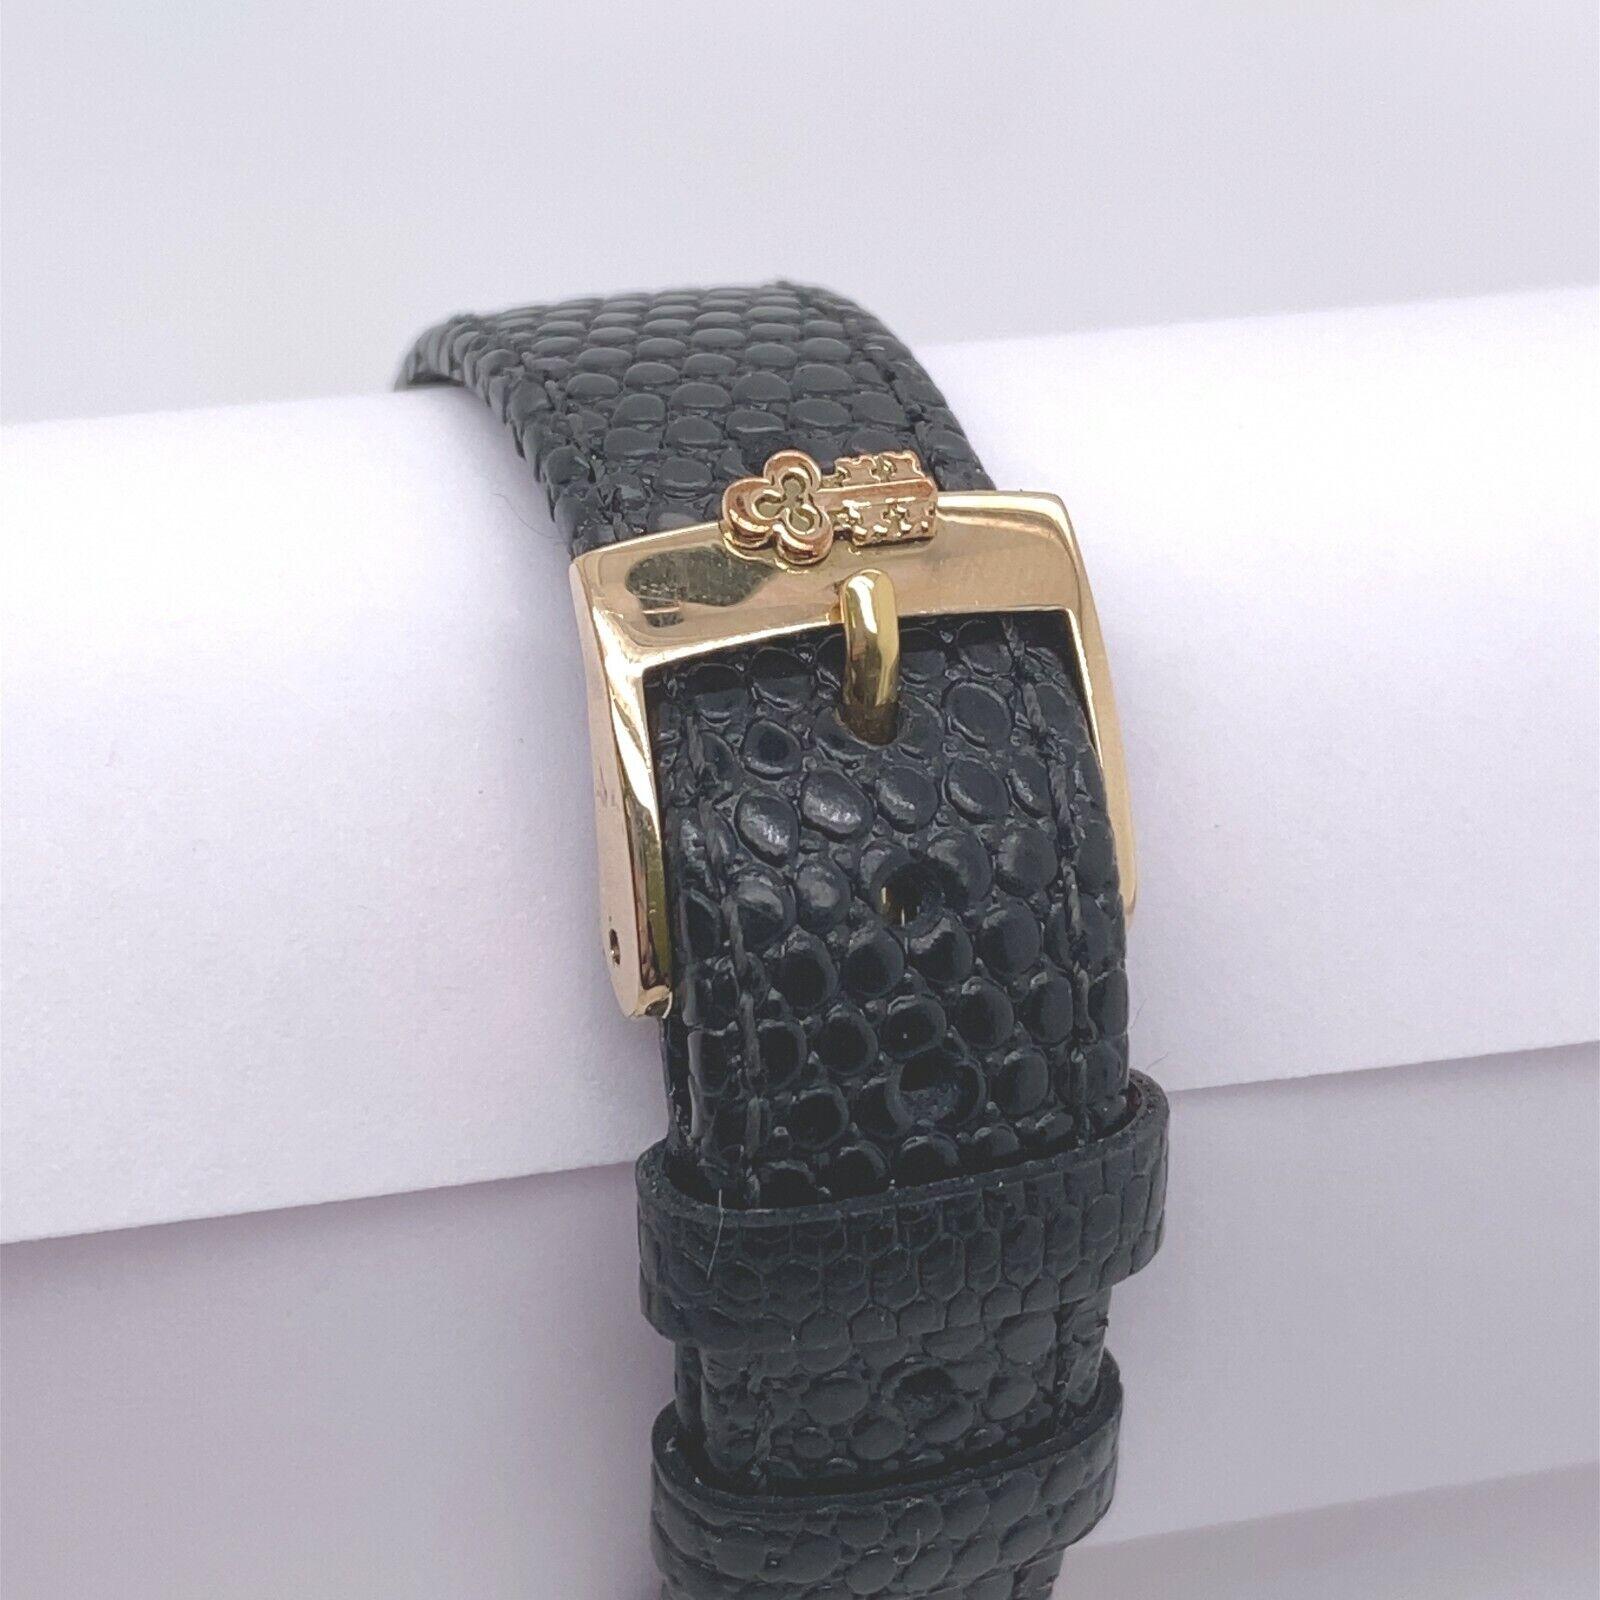 Vintage 1970's Corum 18ct Yellow Gold Watch In Perfect Working Condition

Informations supplémentaires :
Taille du boîtier : 29 mm x 24 mm
Largeur de l'ergot : 18 mm
Largeur du bracelet : 18 mm
Modèle : 27363
Épaisseur du boîtier : 96 mm
Numéro de